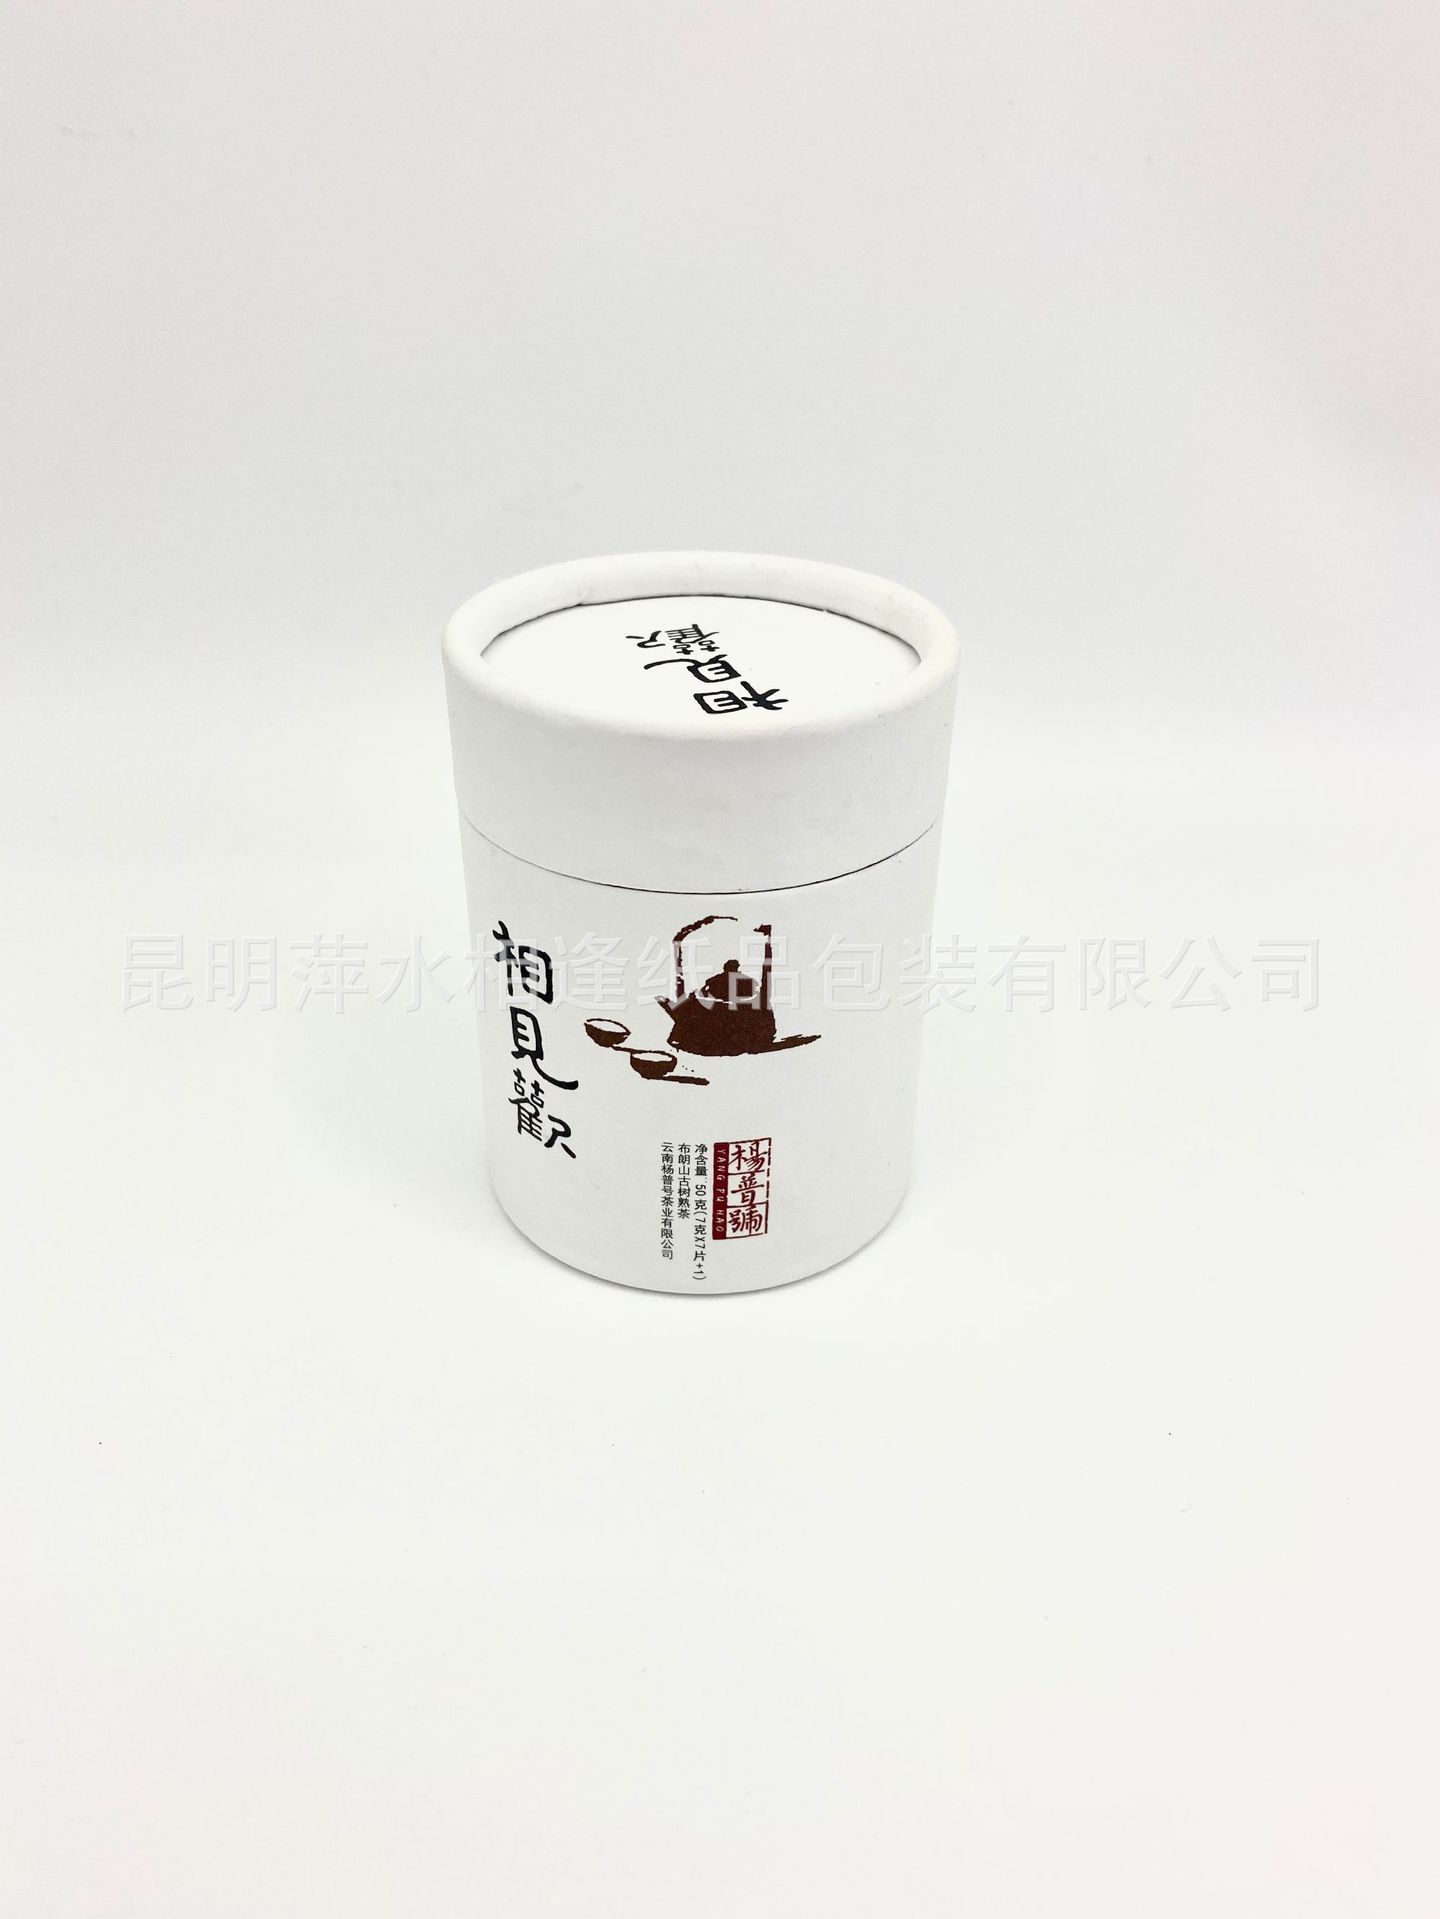 源头厂家小巧迷你茶叶包装盒 简约时尚圆筒纸罐包装 可设计